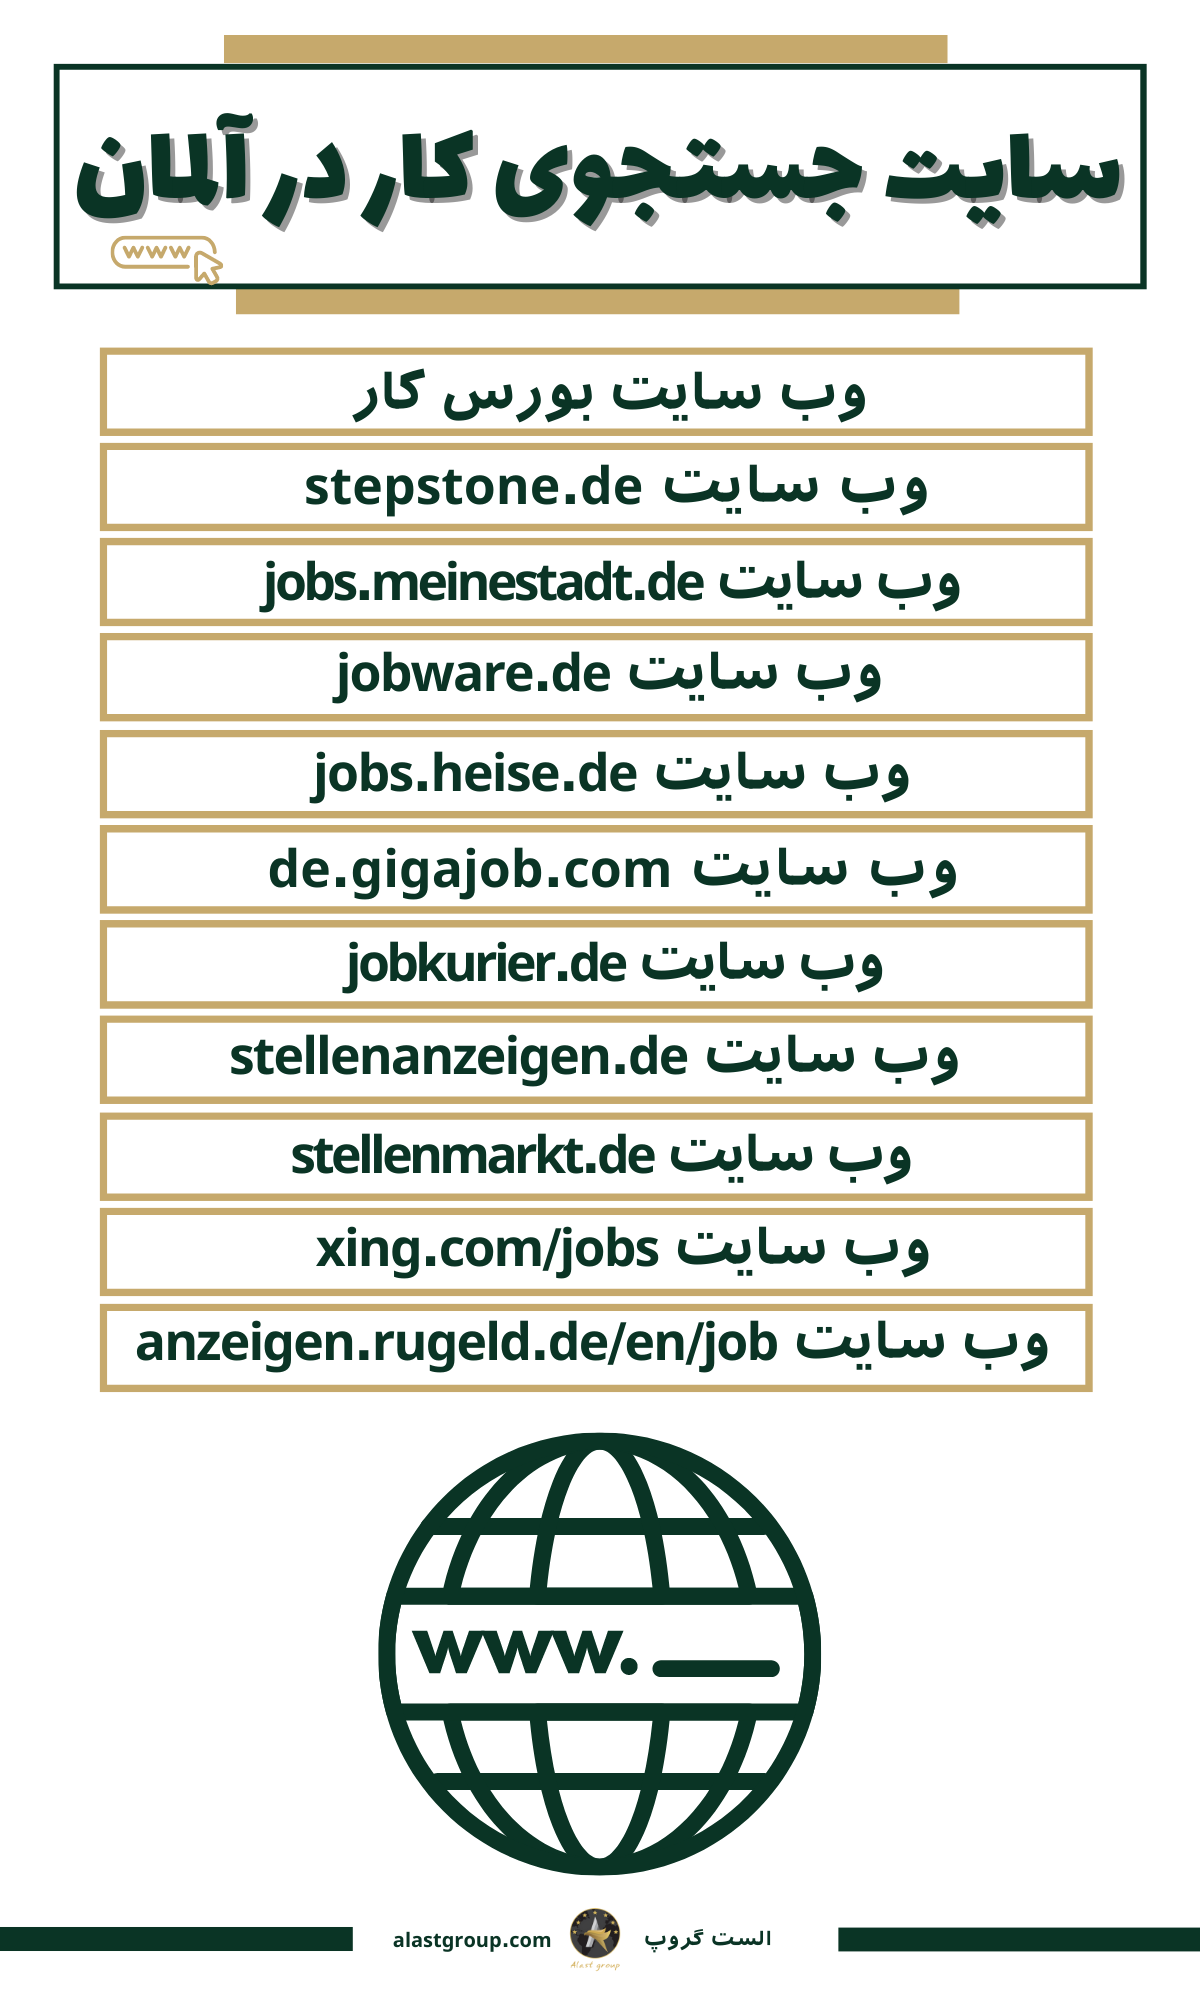 اینفوگرافیک سایت جستجوی کار در آلمان